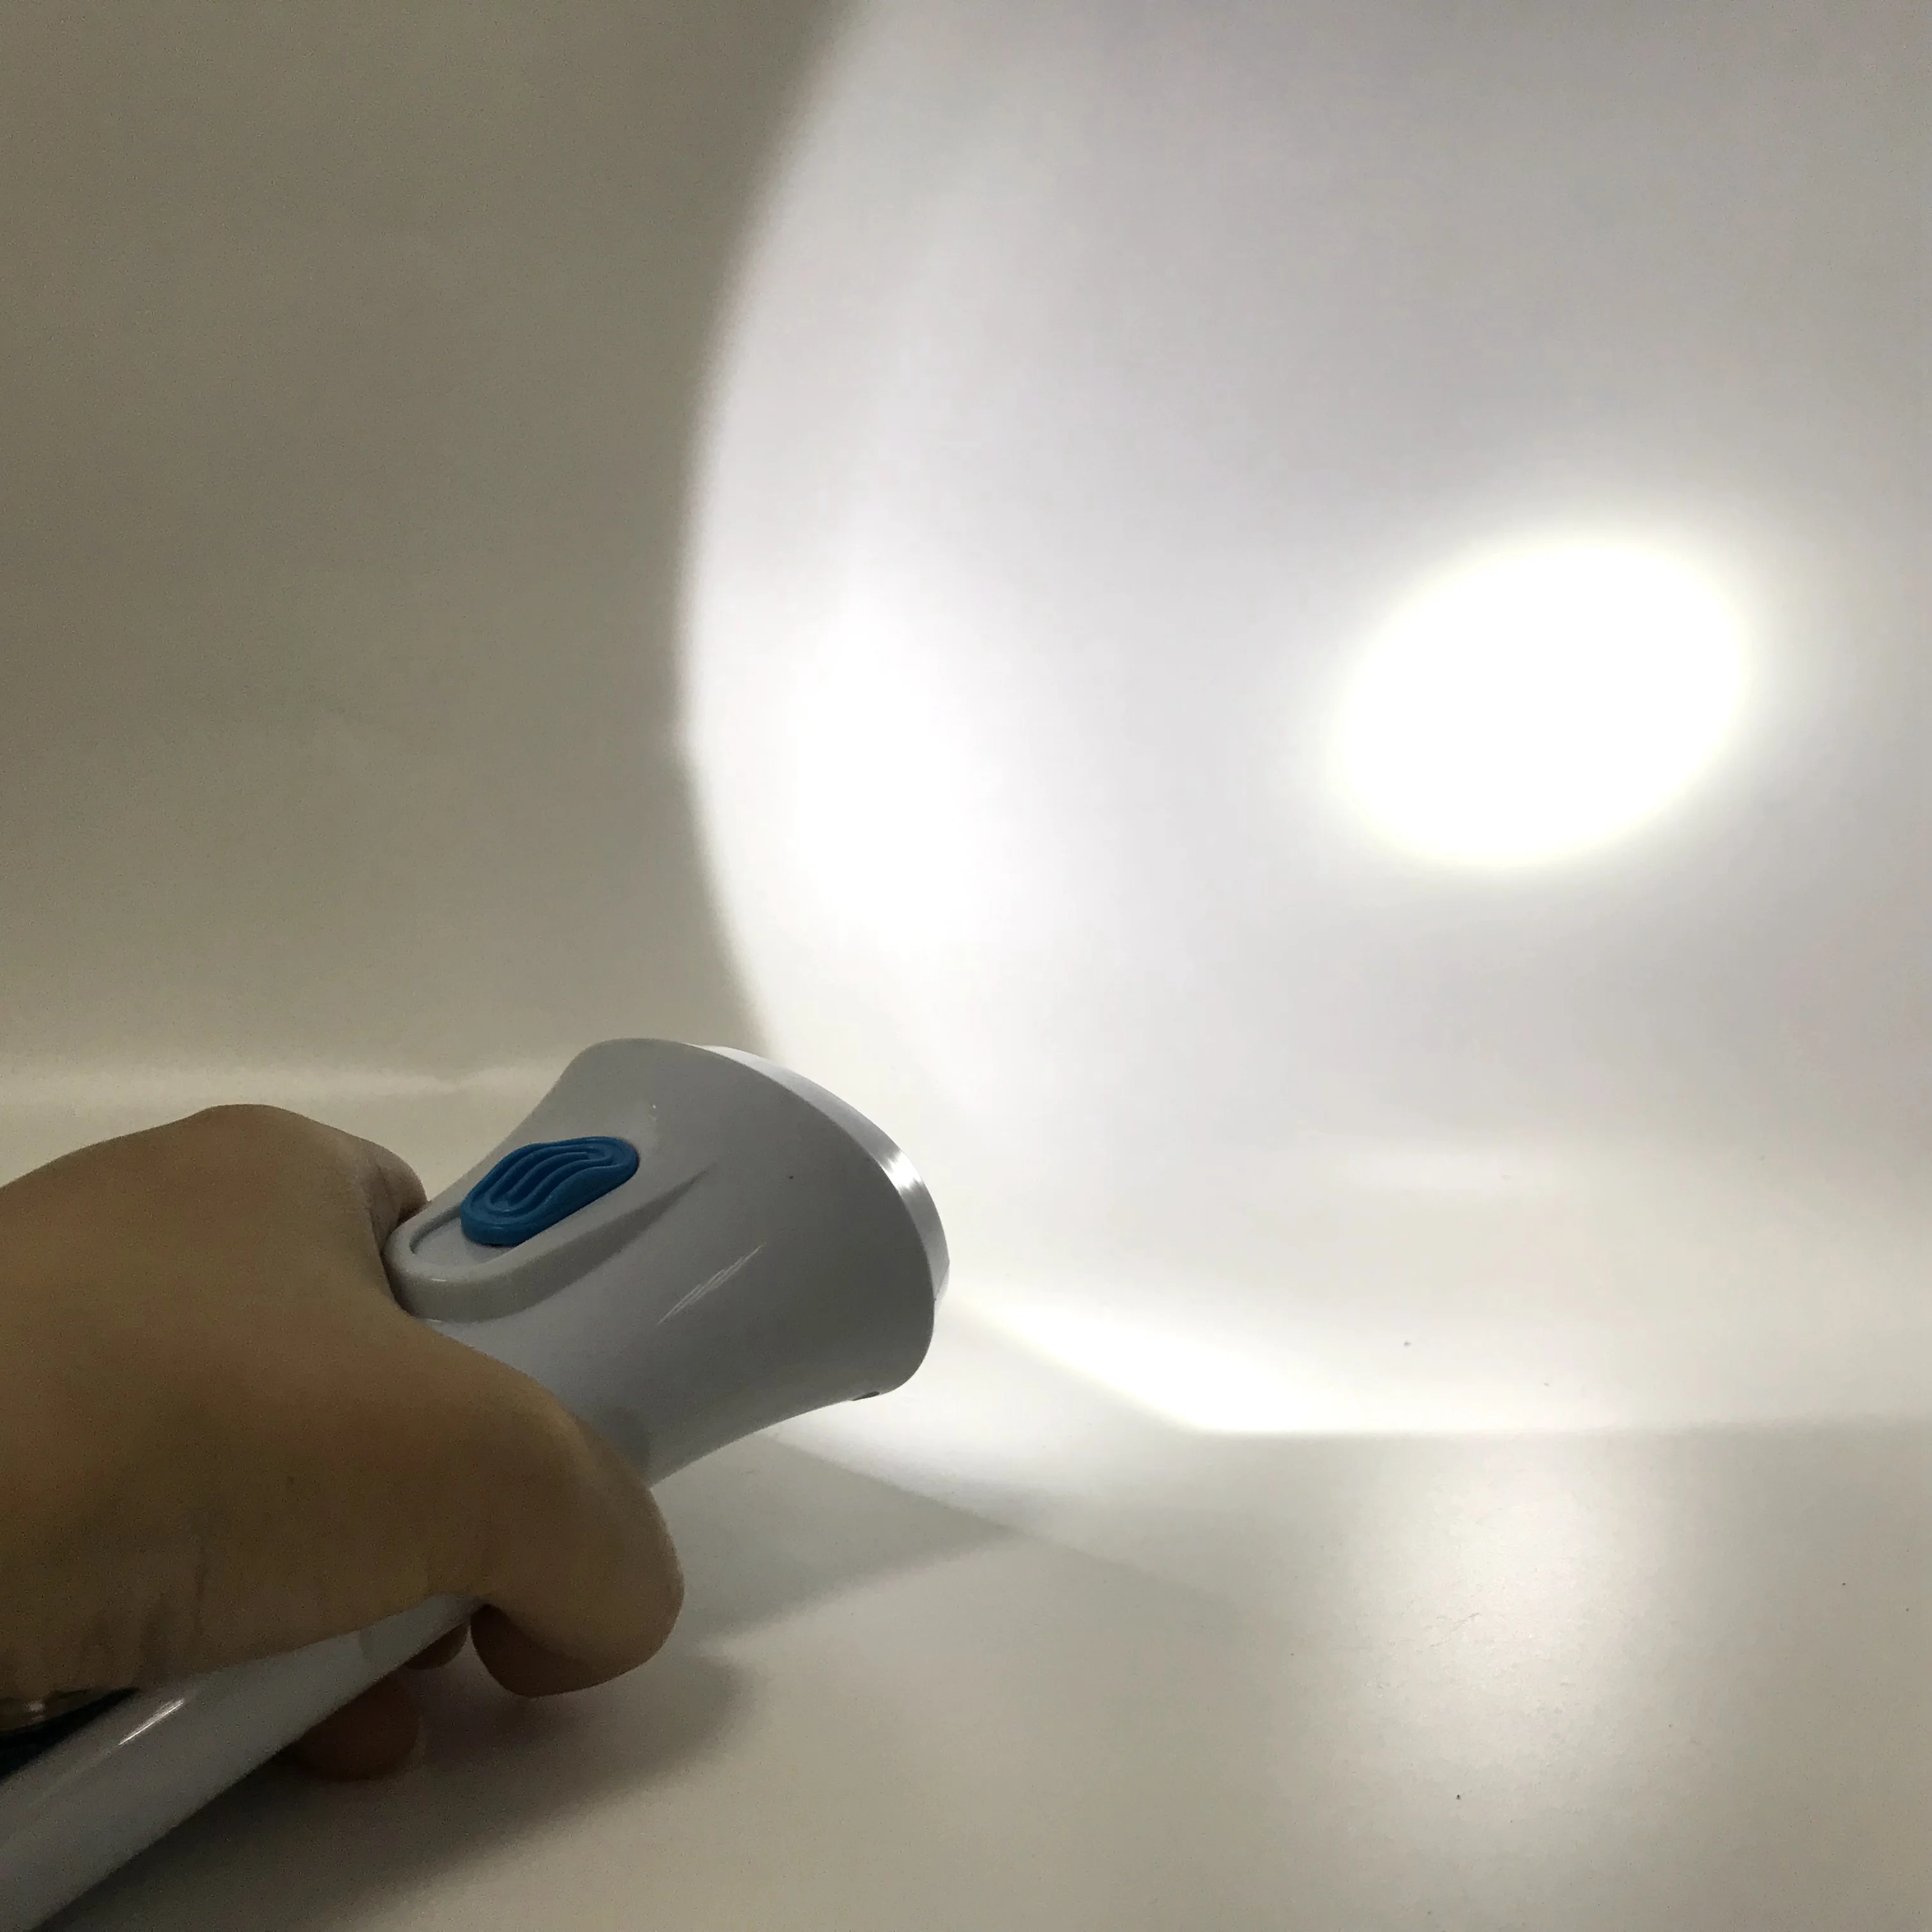 Многофункциональный беспроводной светодиодный светильник Mingray в спальню, а также светильник-вспышка на батарейках или фонарь для отдыха на природе, рыбалки